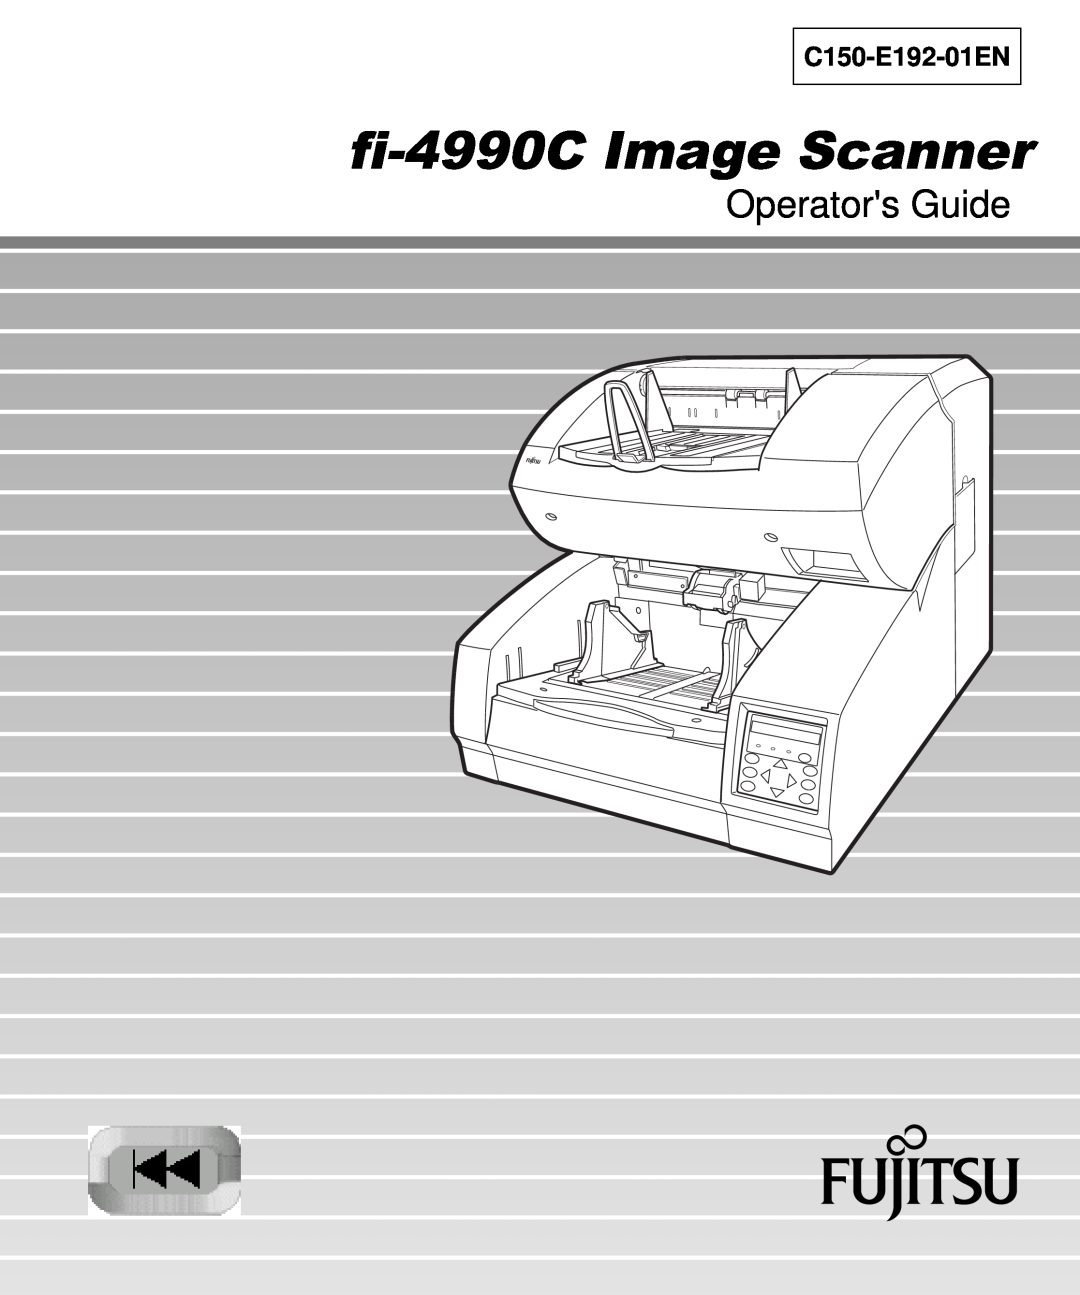 Fujitsu manual fi-4990C Image Scanner, Operators Guide, C150-E192-01EN 